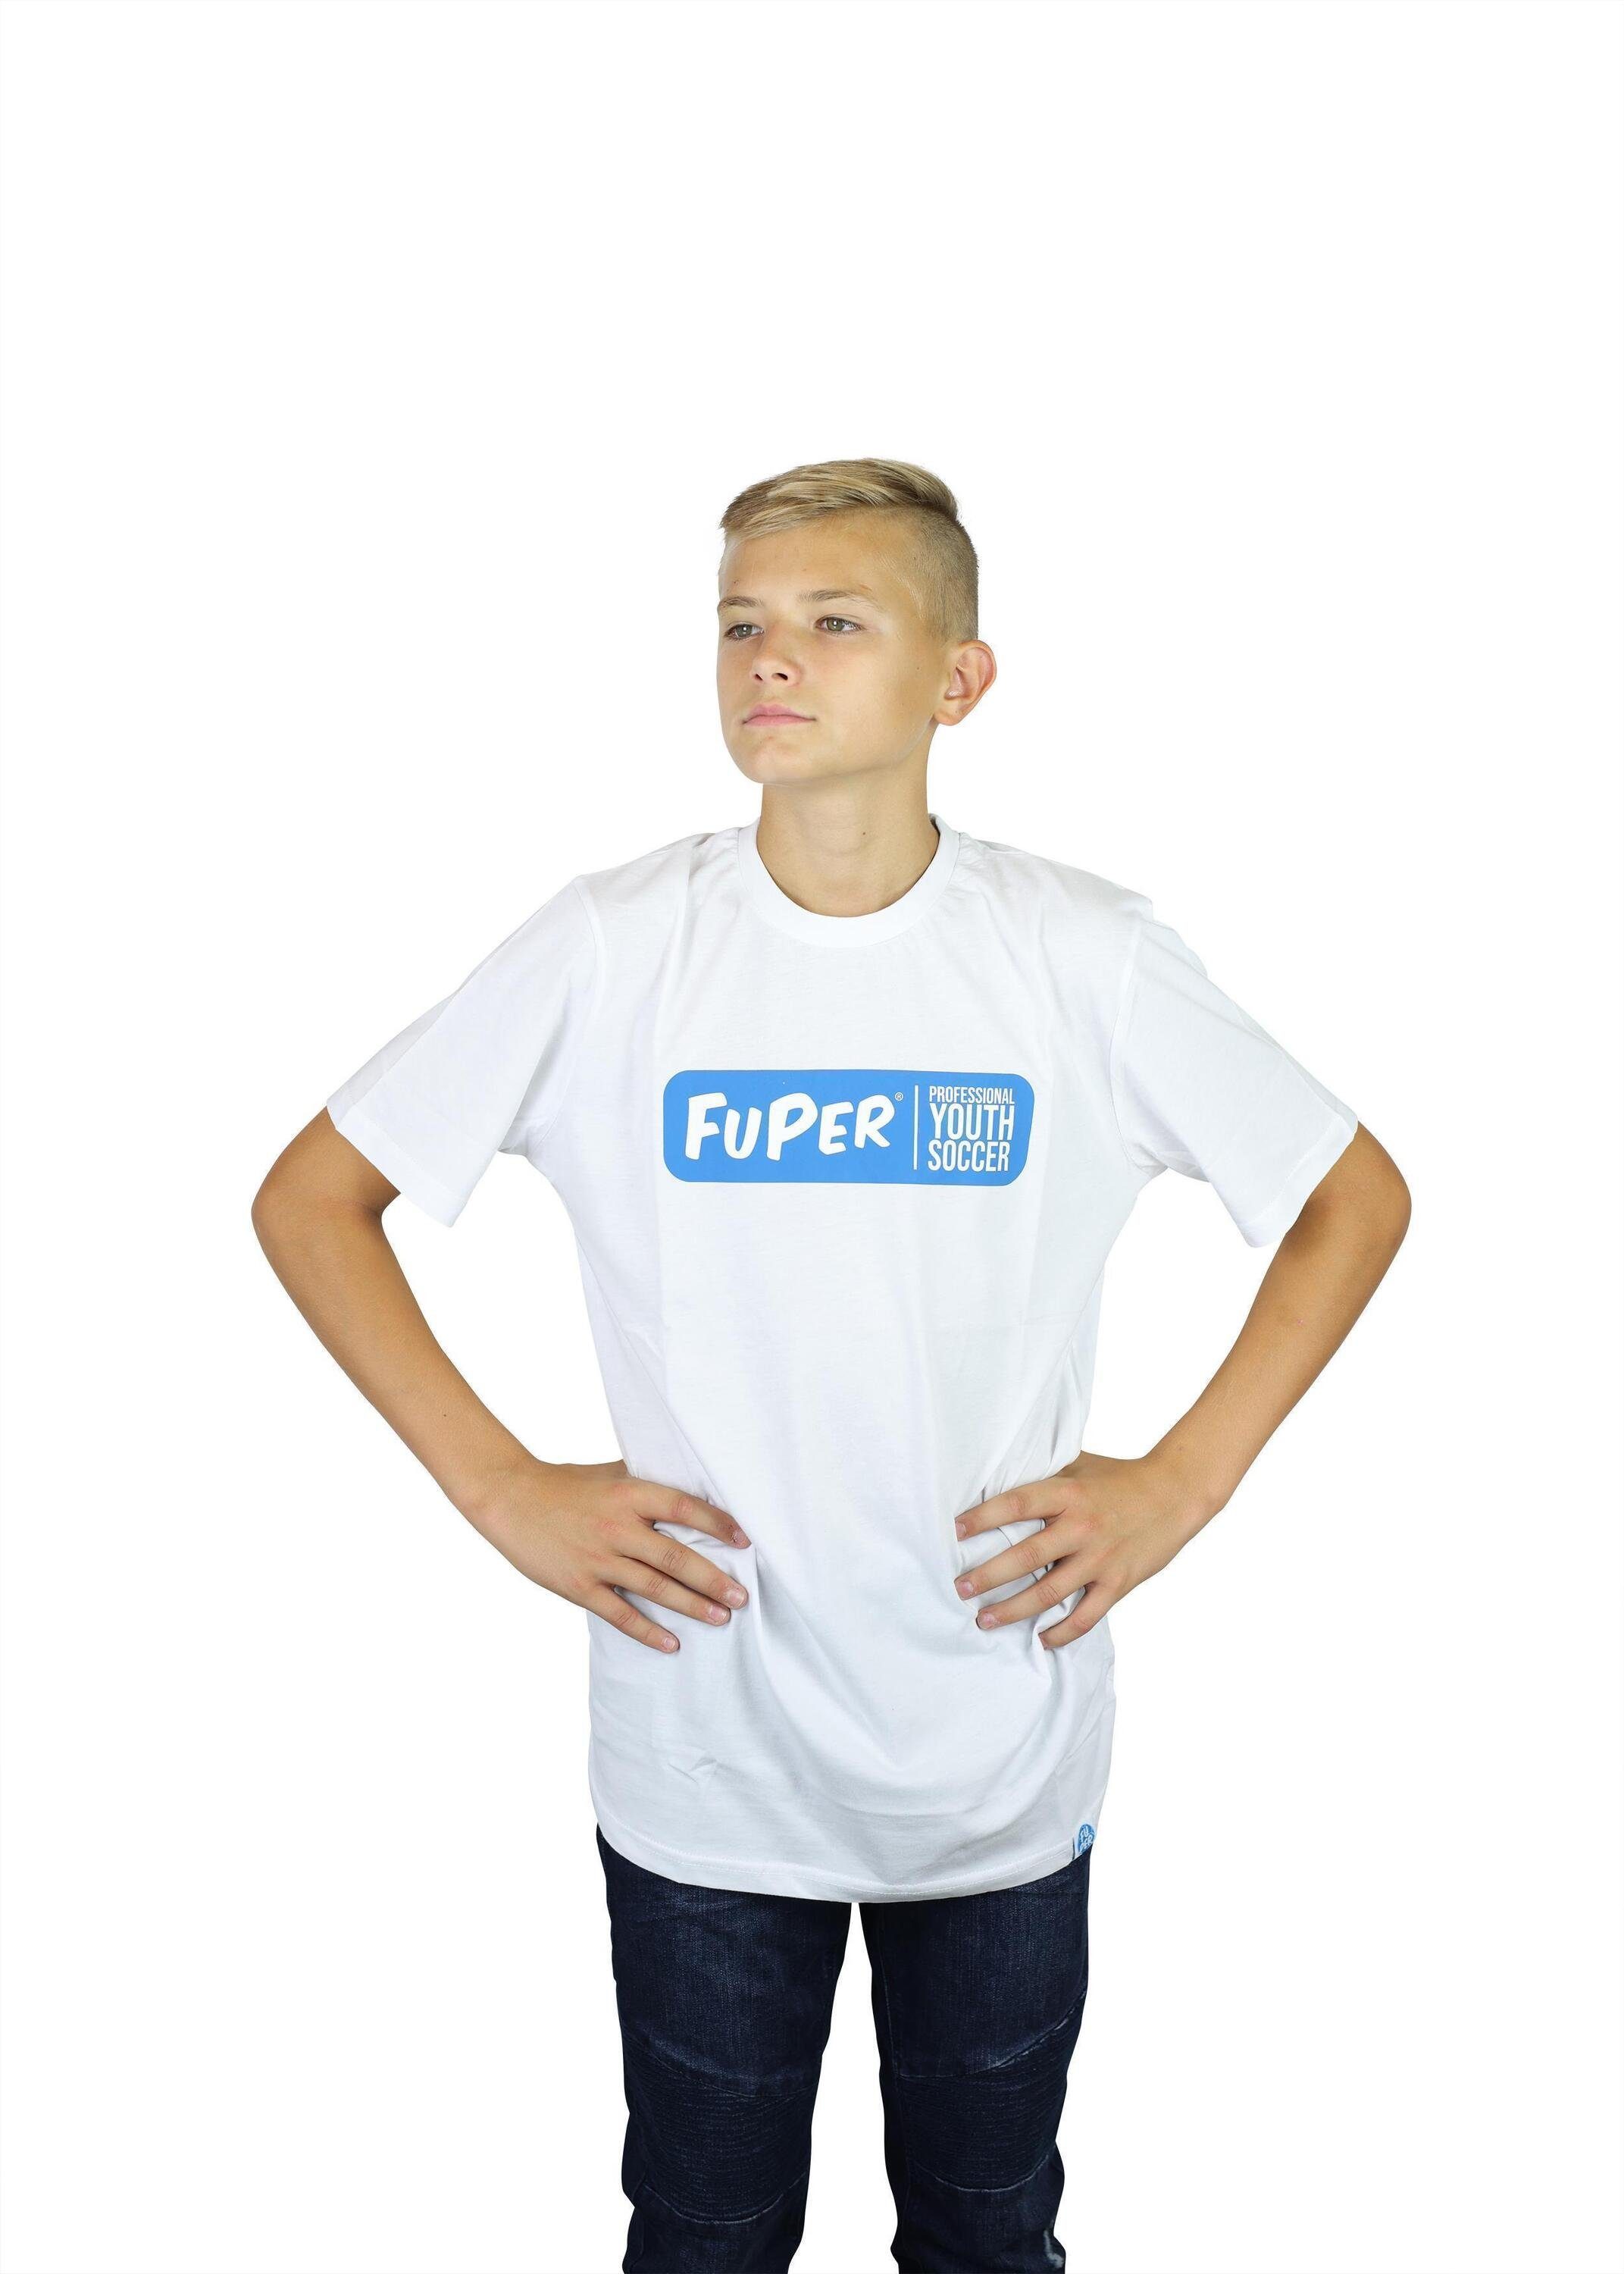 aus Juri Kinder, T-Shirt Jugend Baumwolle, Fußball, für White FuPer